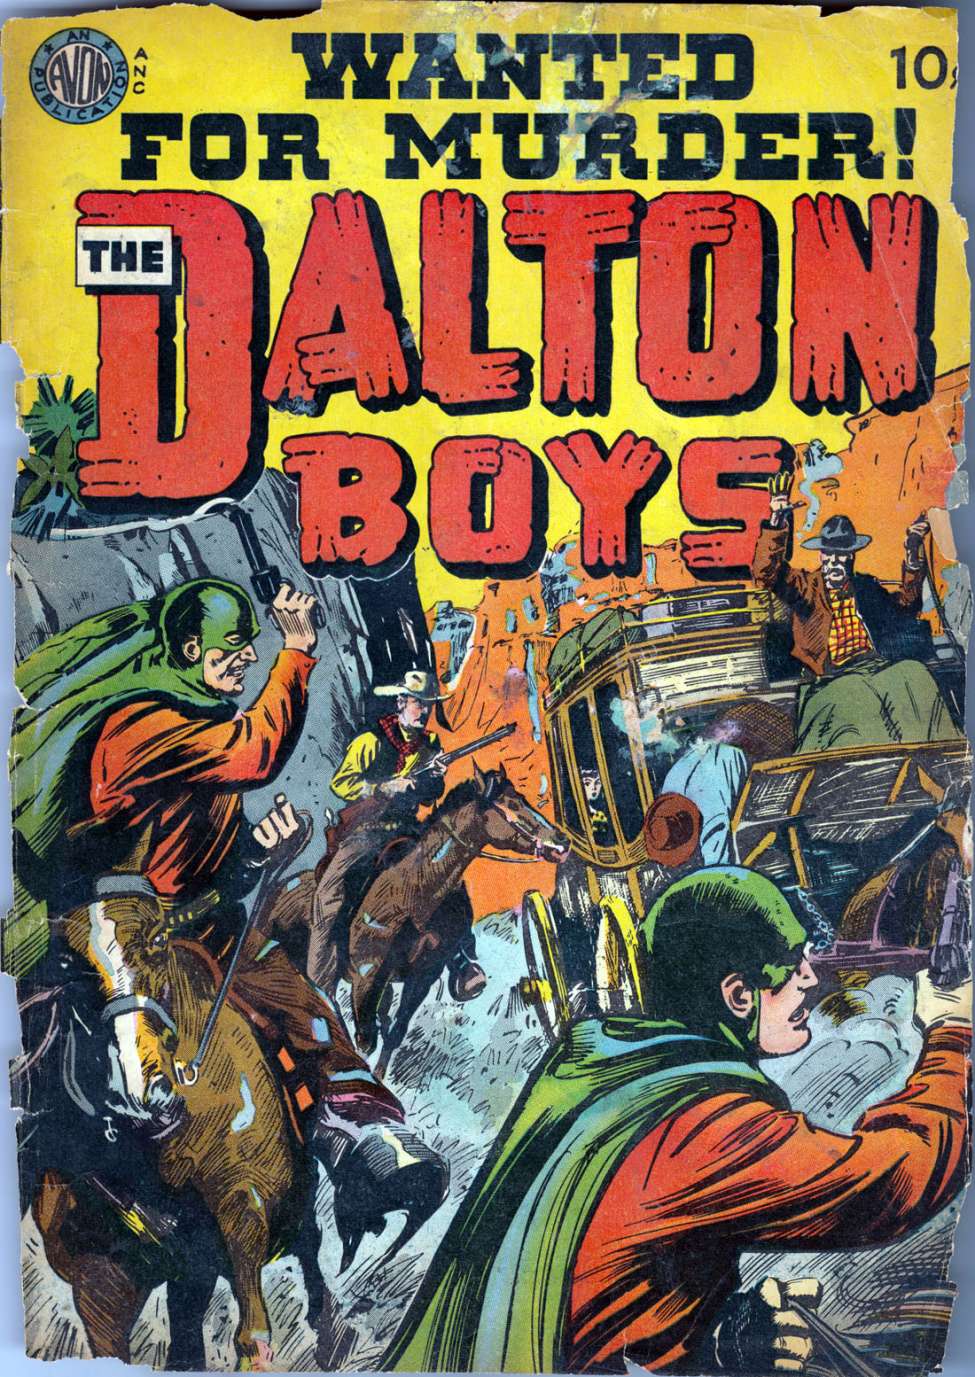 Book Cover For The Dalton Boys 1 - Version 1